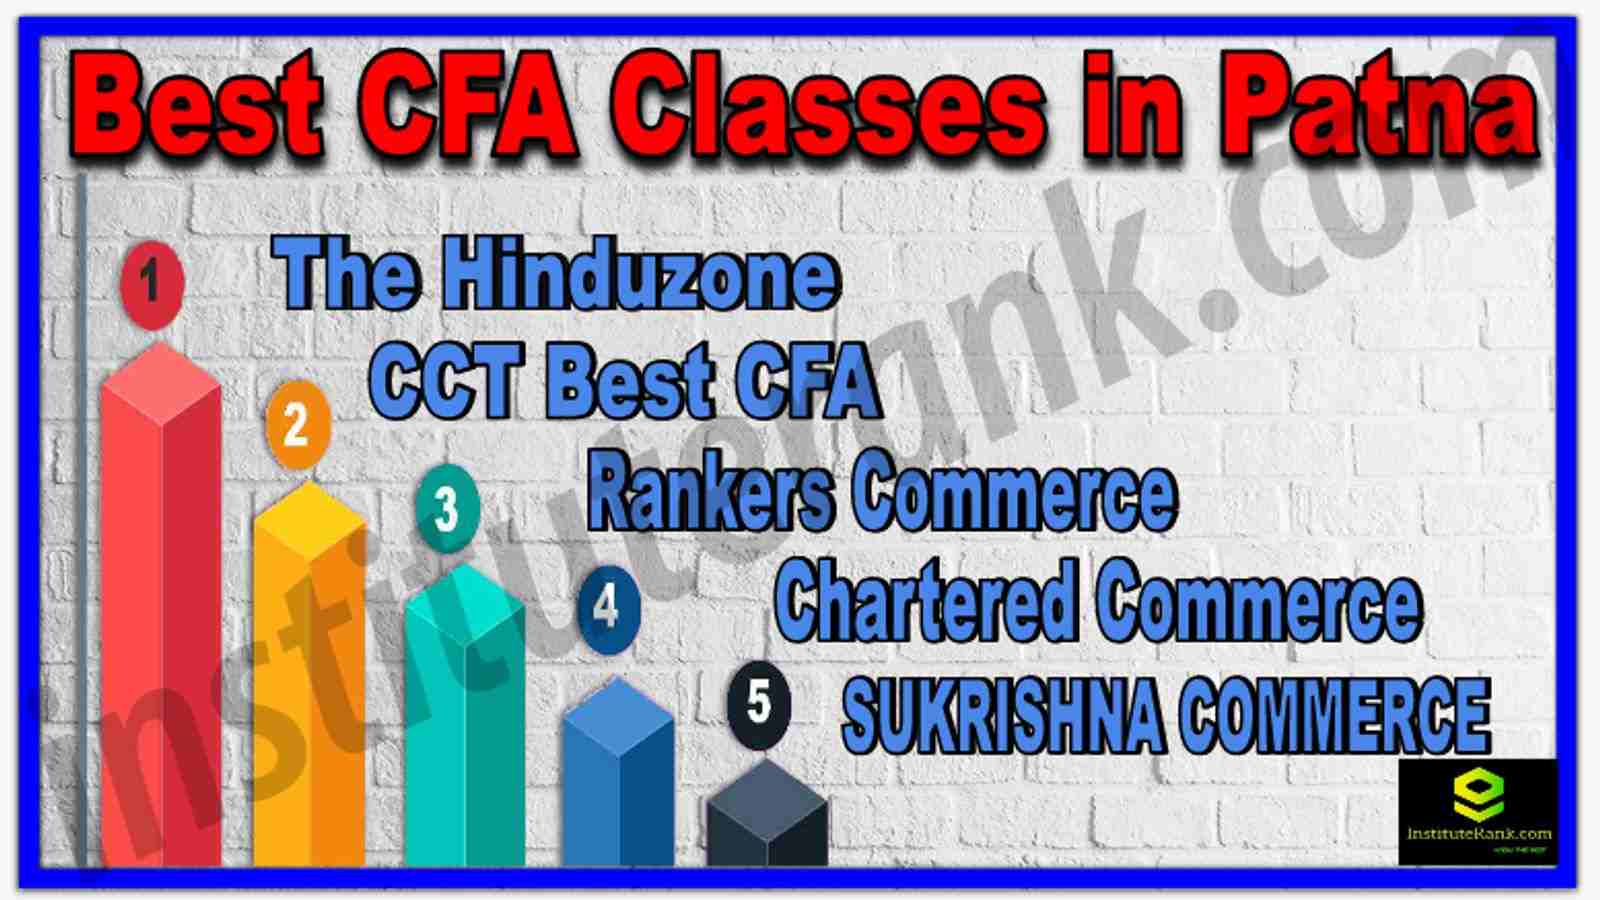 Best CFA Classes in Patna